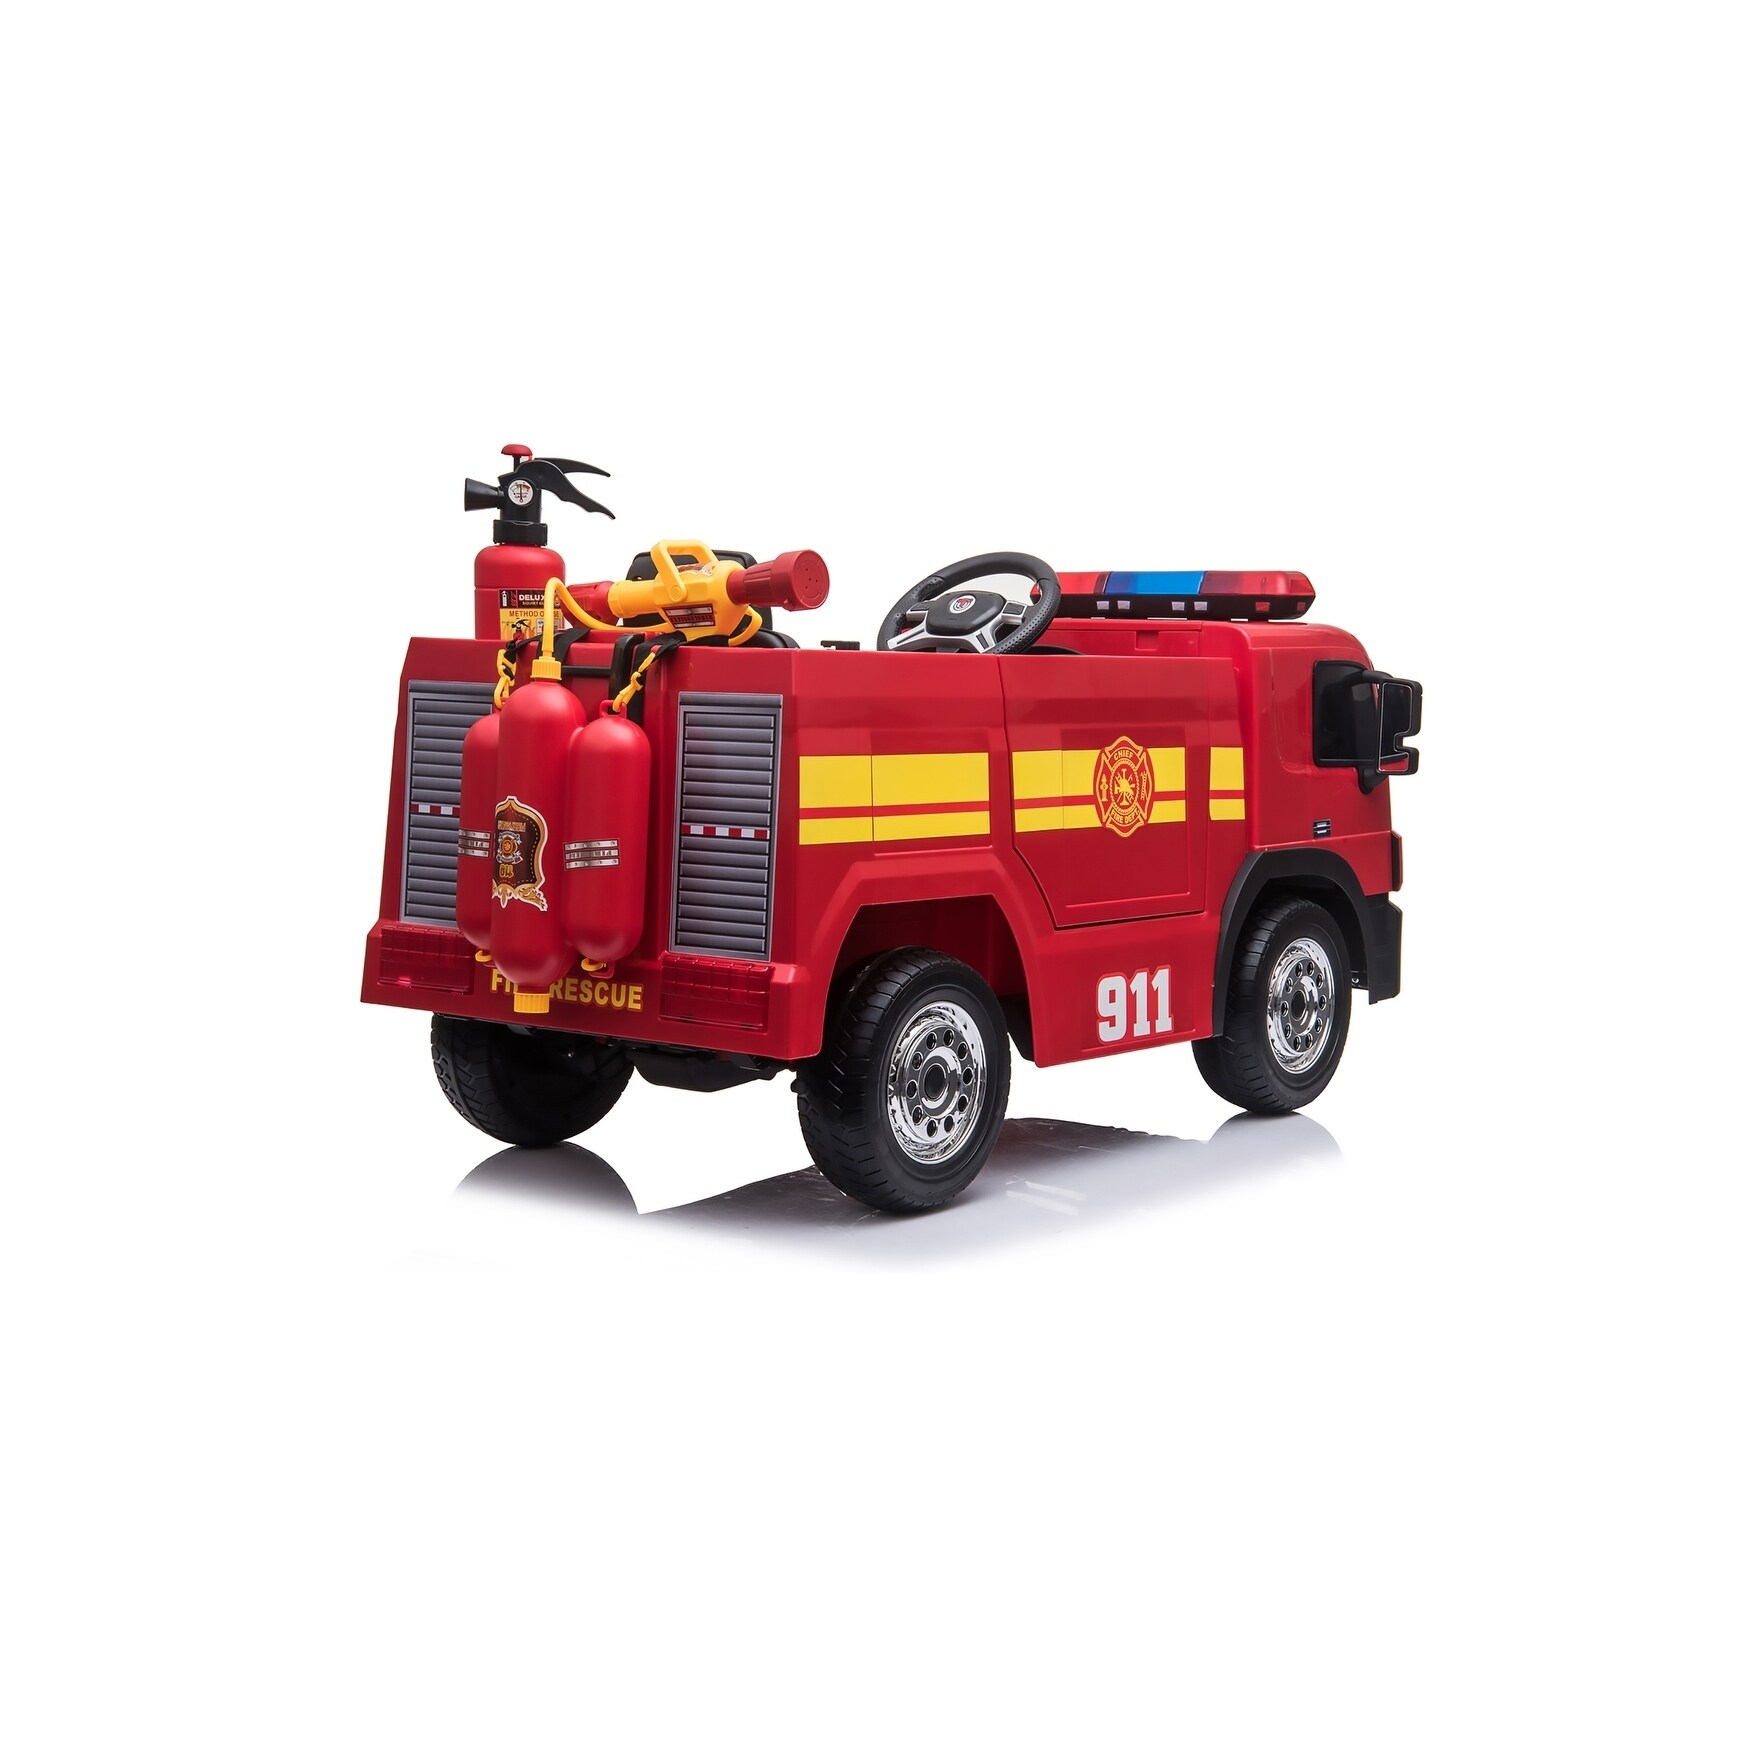 24 volt fire truck